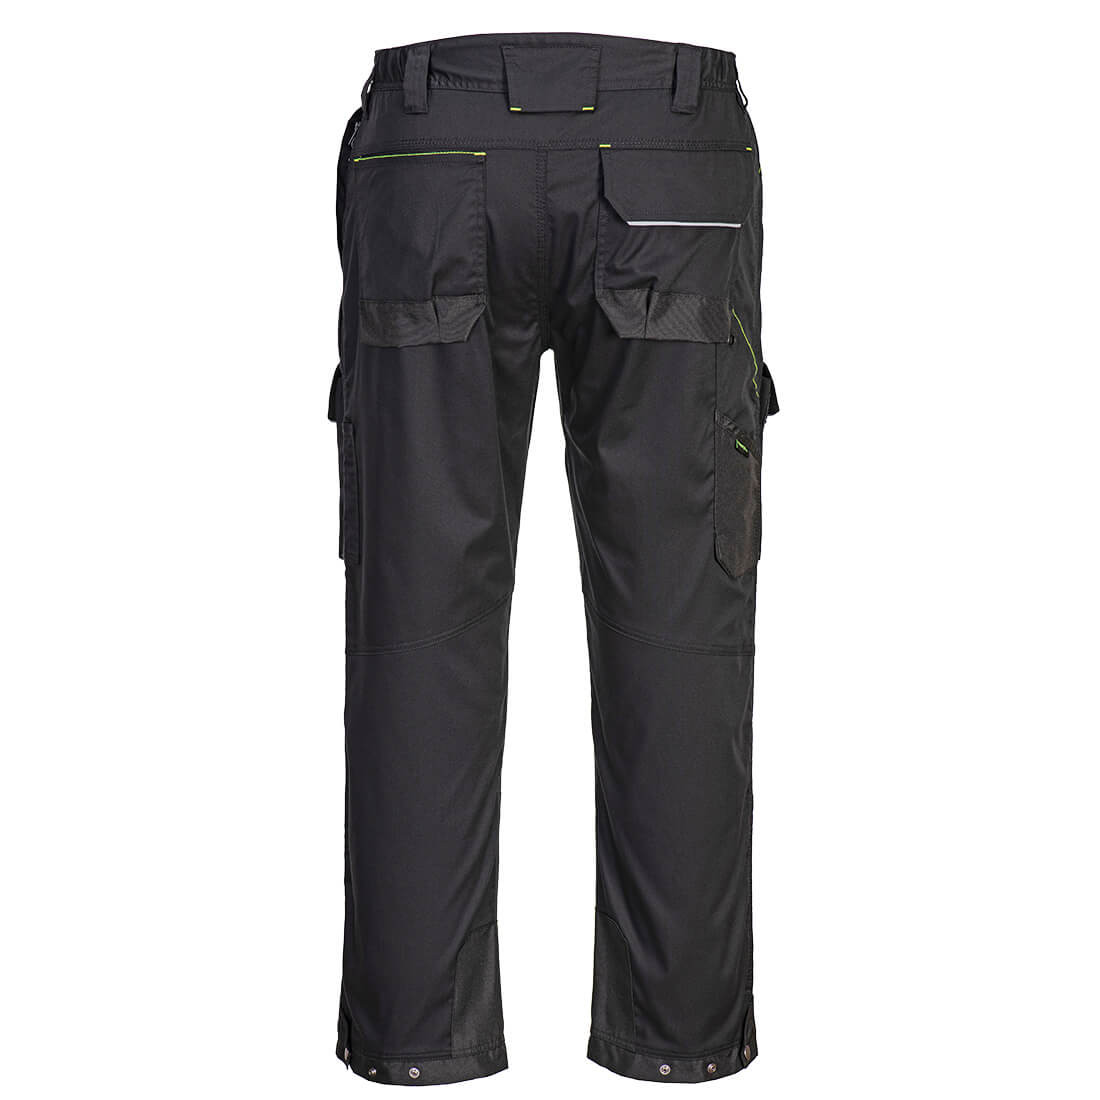 Pantalon taille PW3 pour utilisation avec harnais - Les vêtements de protection